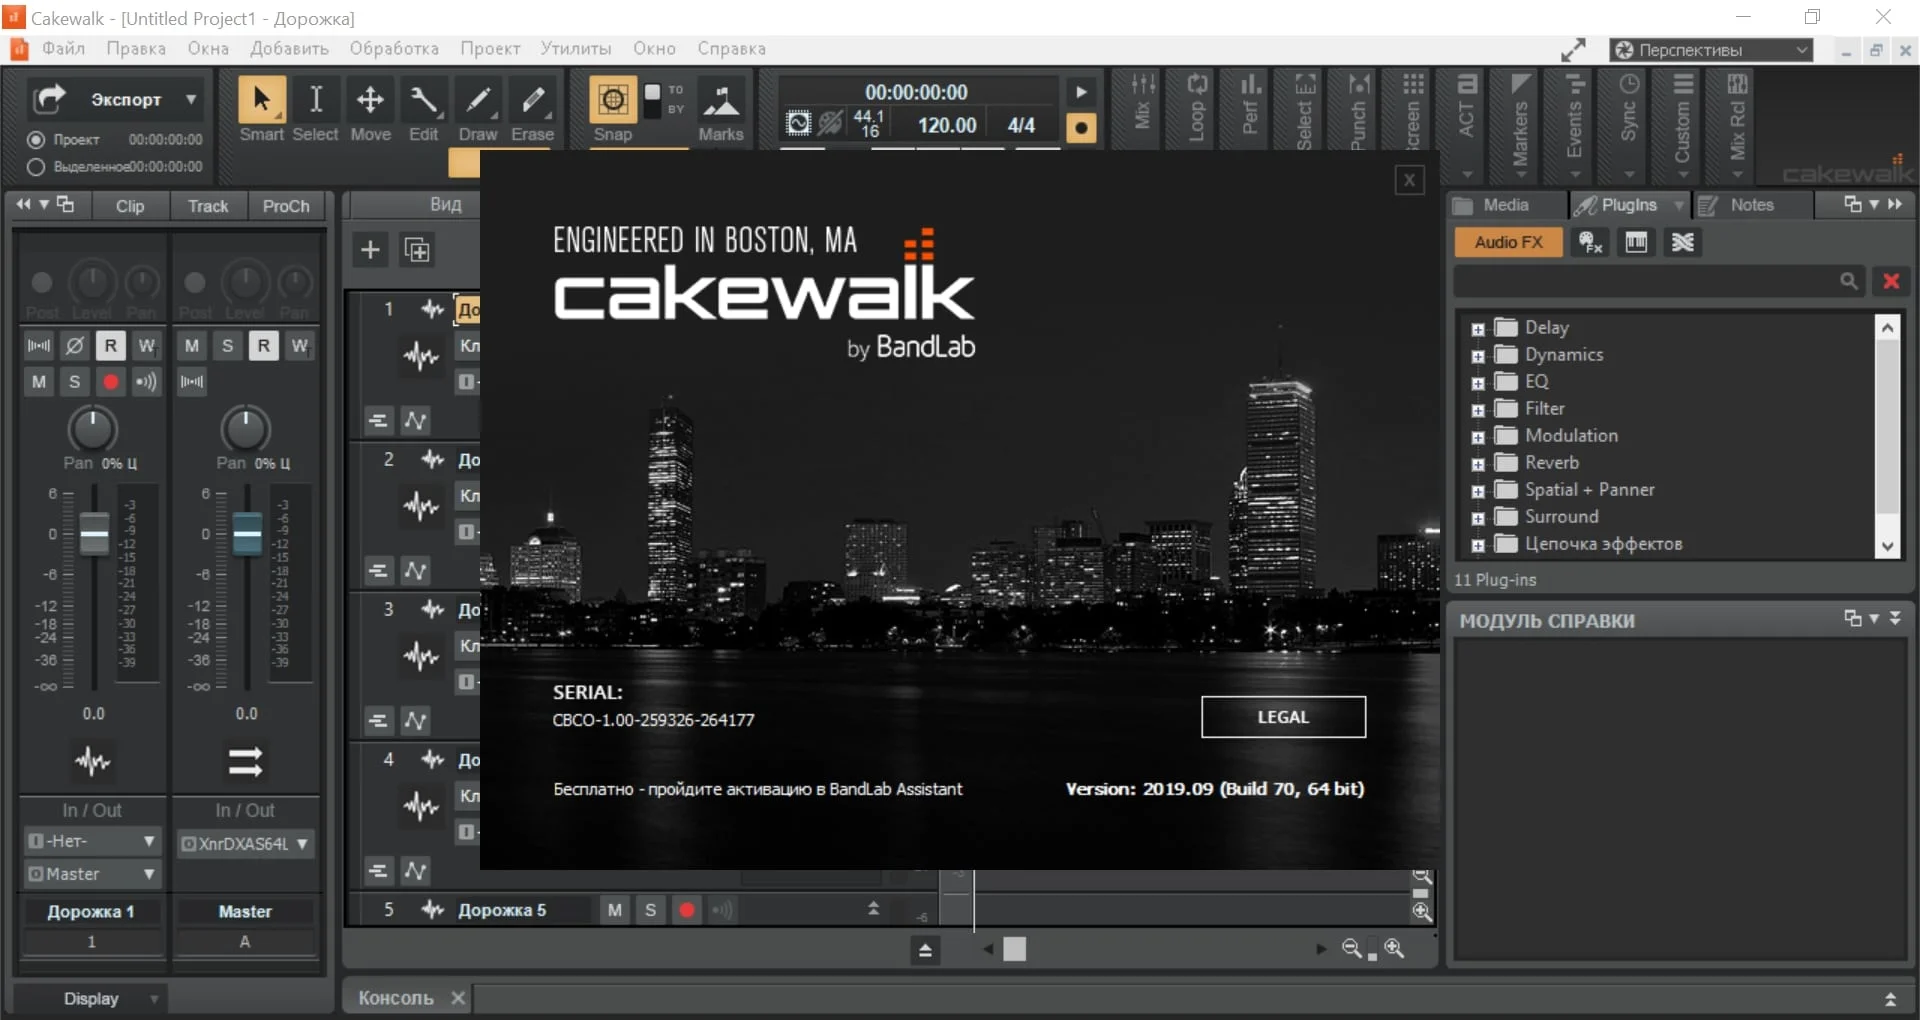 Bandlab Cakewalk Full Version Free Download